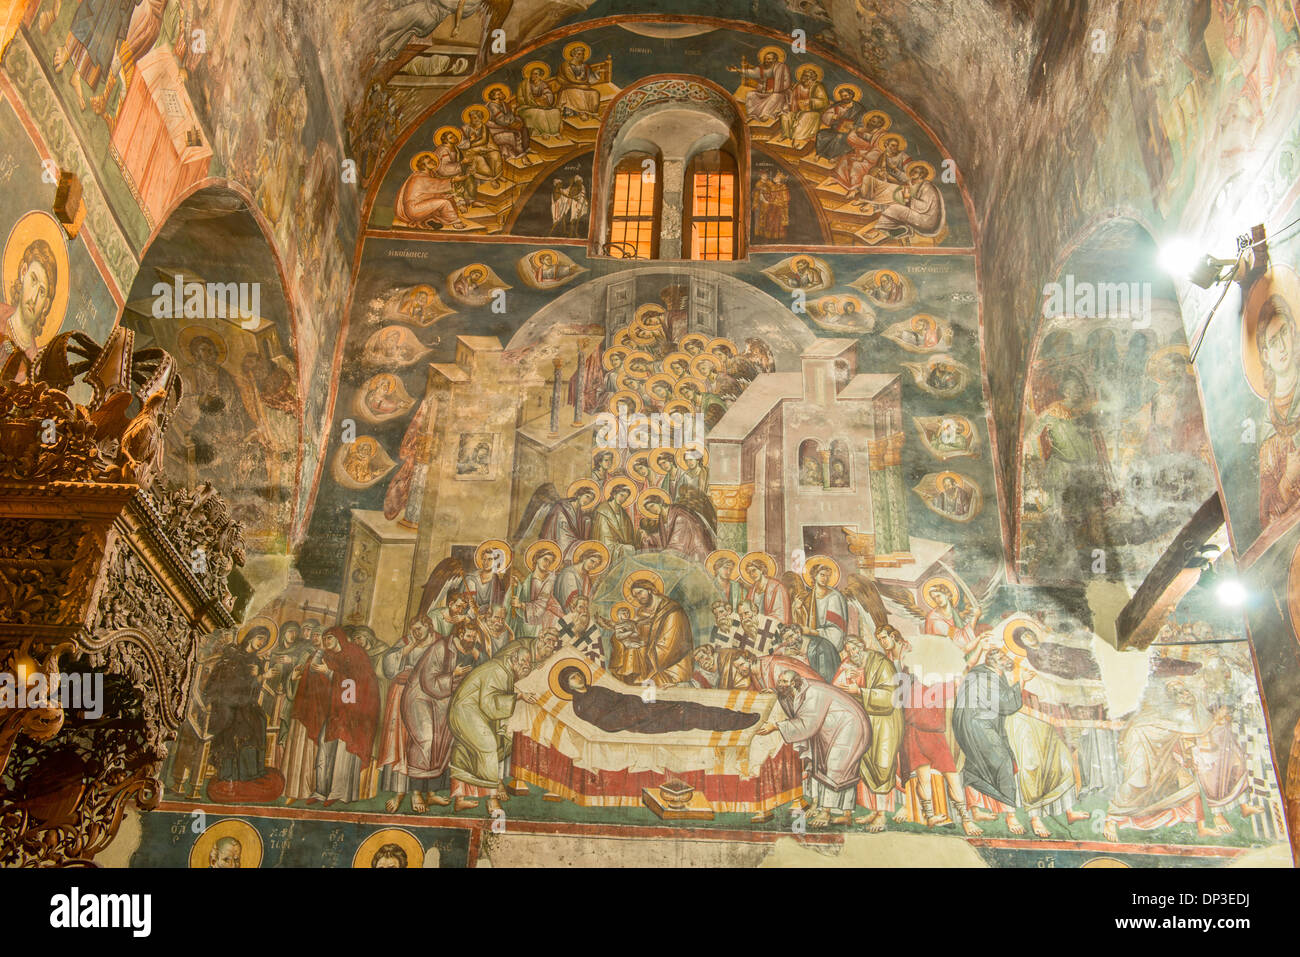 Des fresques sur les murs de l'église Sainte Mère de Dieu Église Peribleptos Ohrid Macédoine construit en 1295 exemples de fresques byzantines Banque D'Images